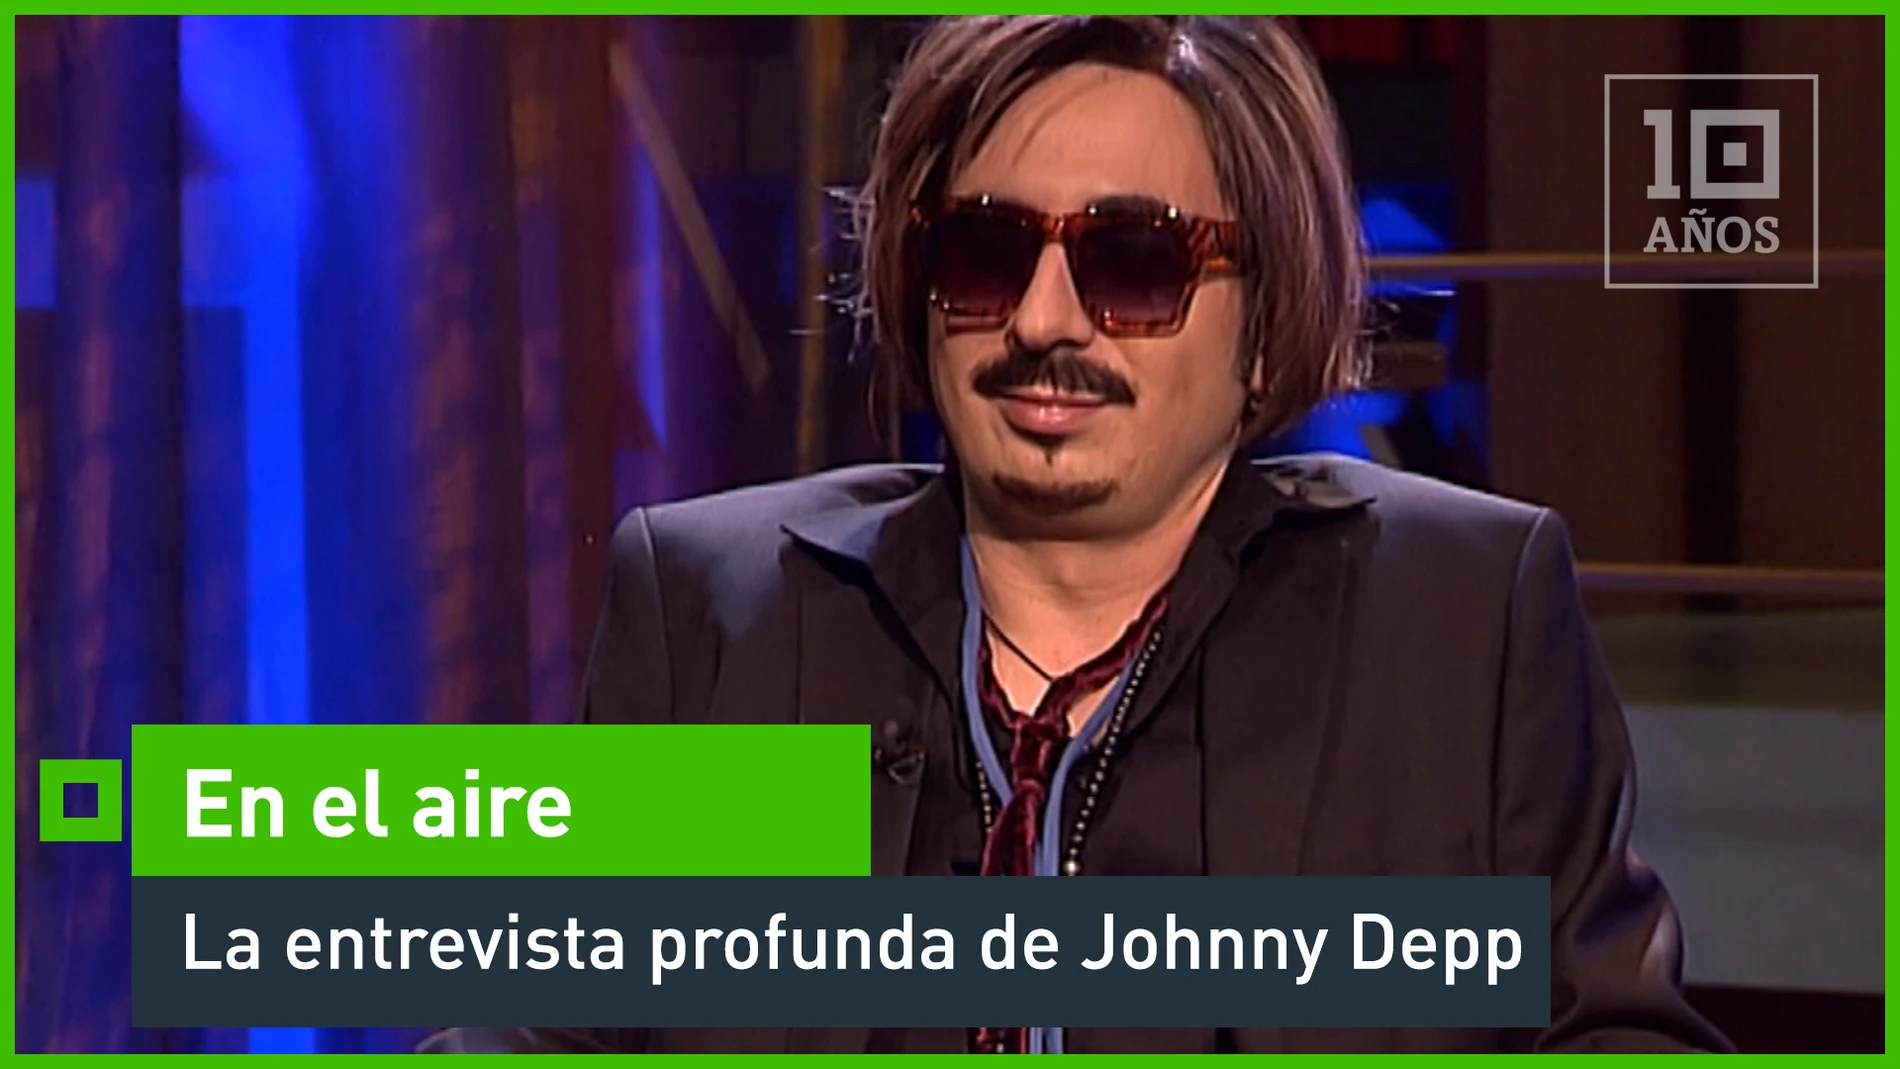 La entrevista profunda de Johnny Depp